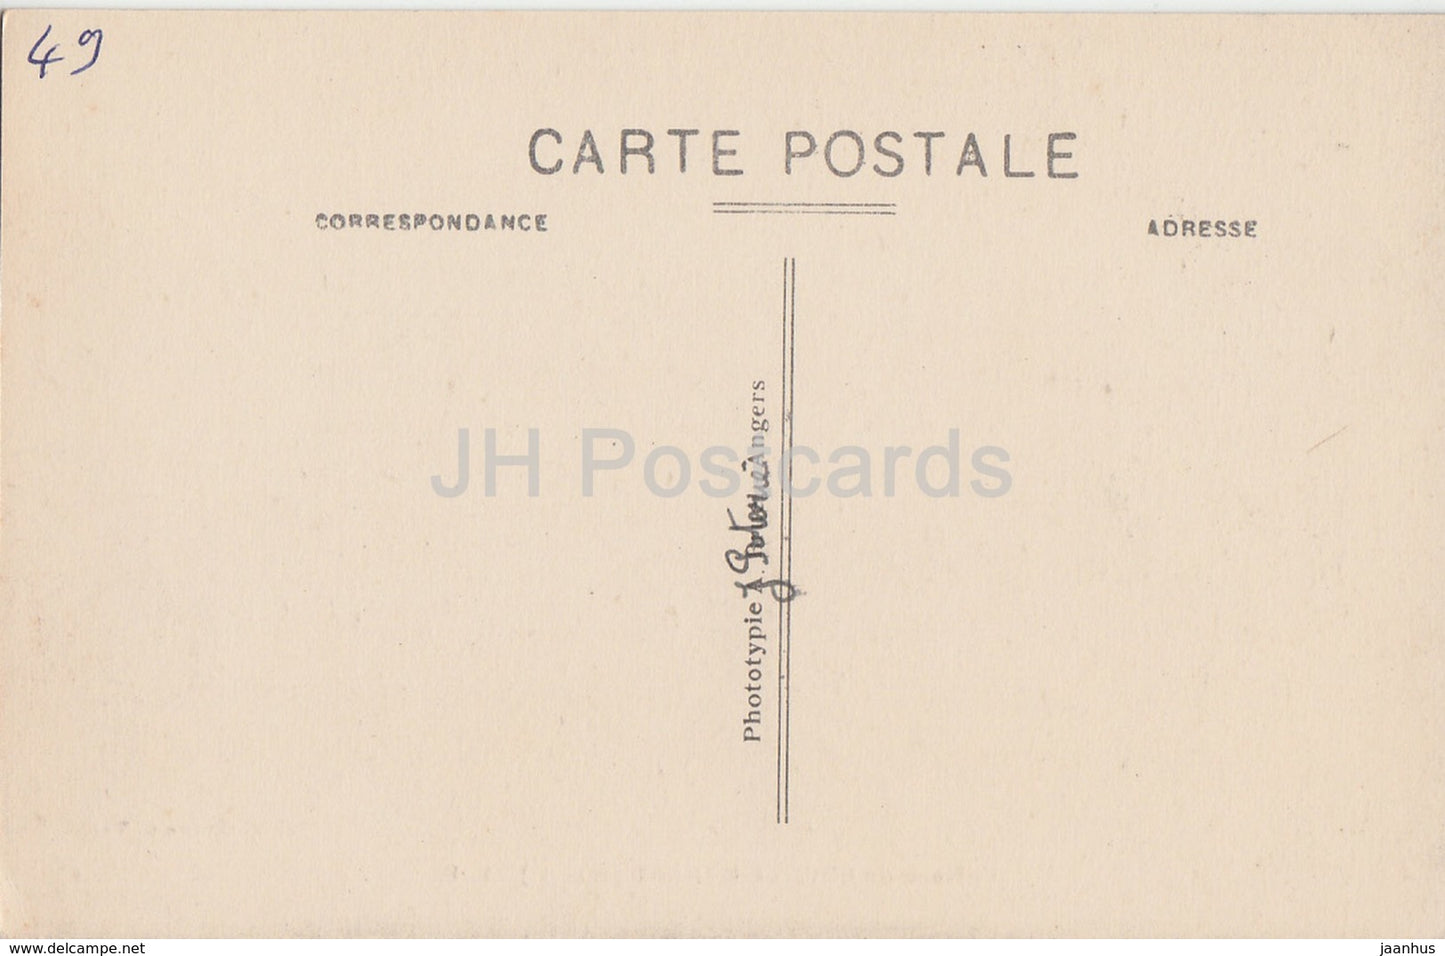 Chateau de Bouille Menard - Schloss - alte Postkarte - Frankreich - unbenutzt